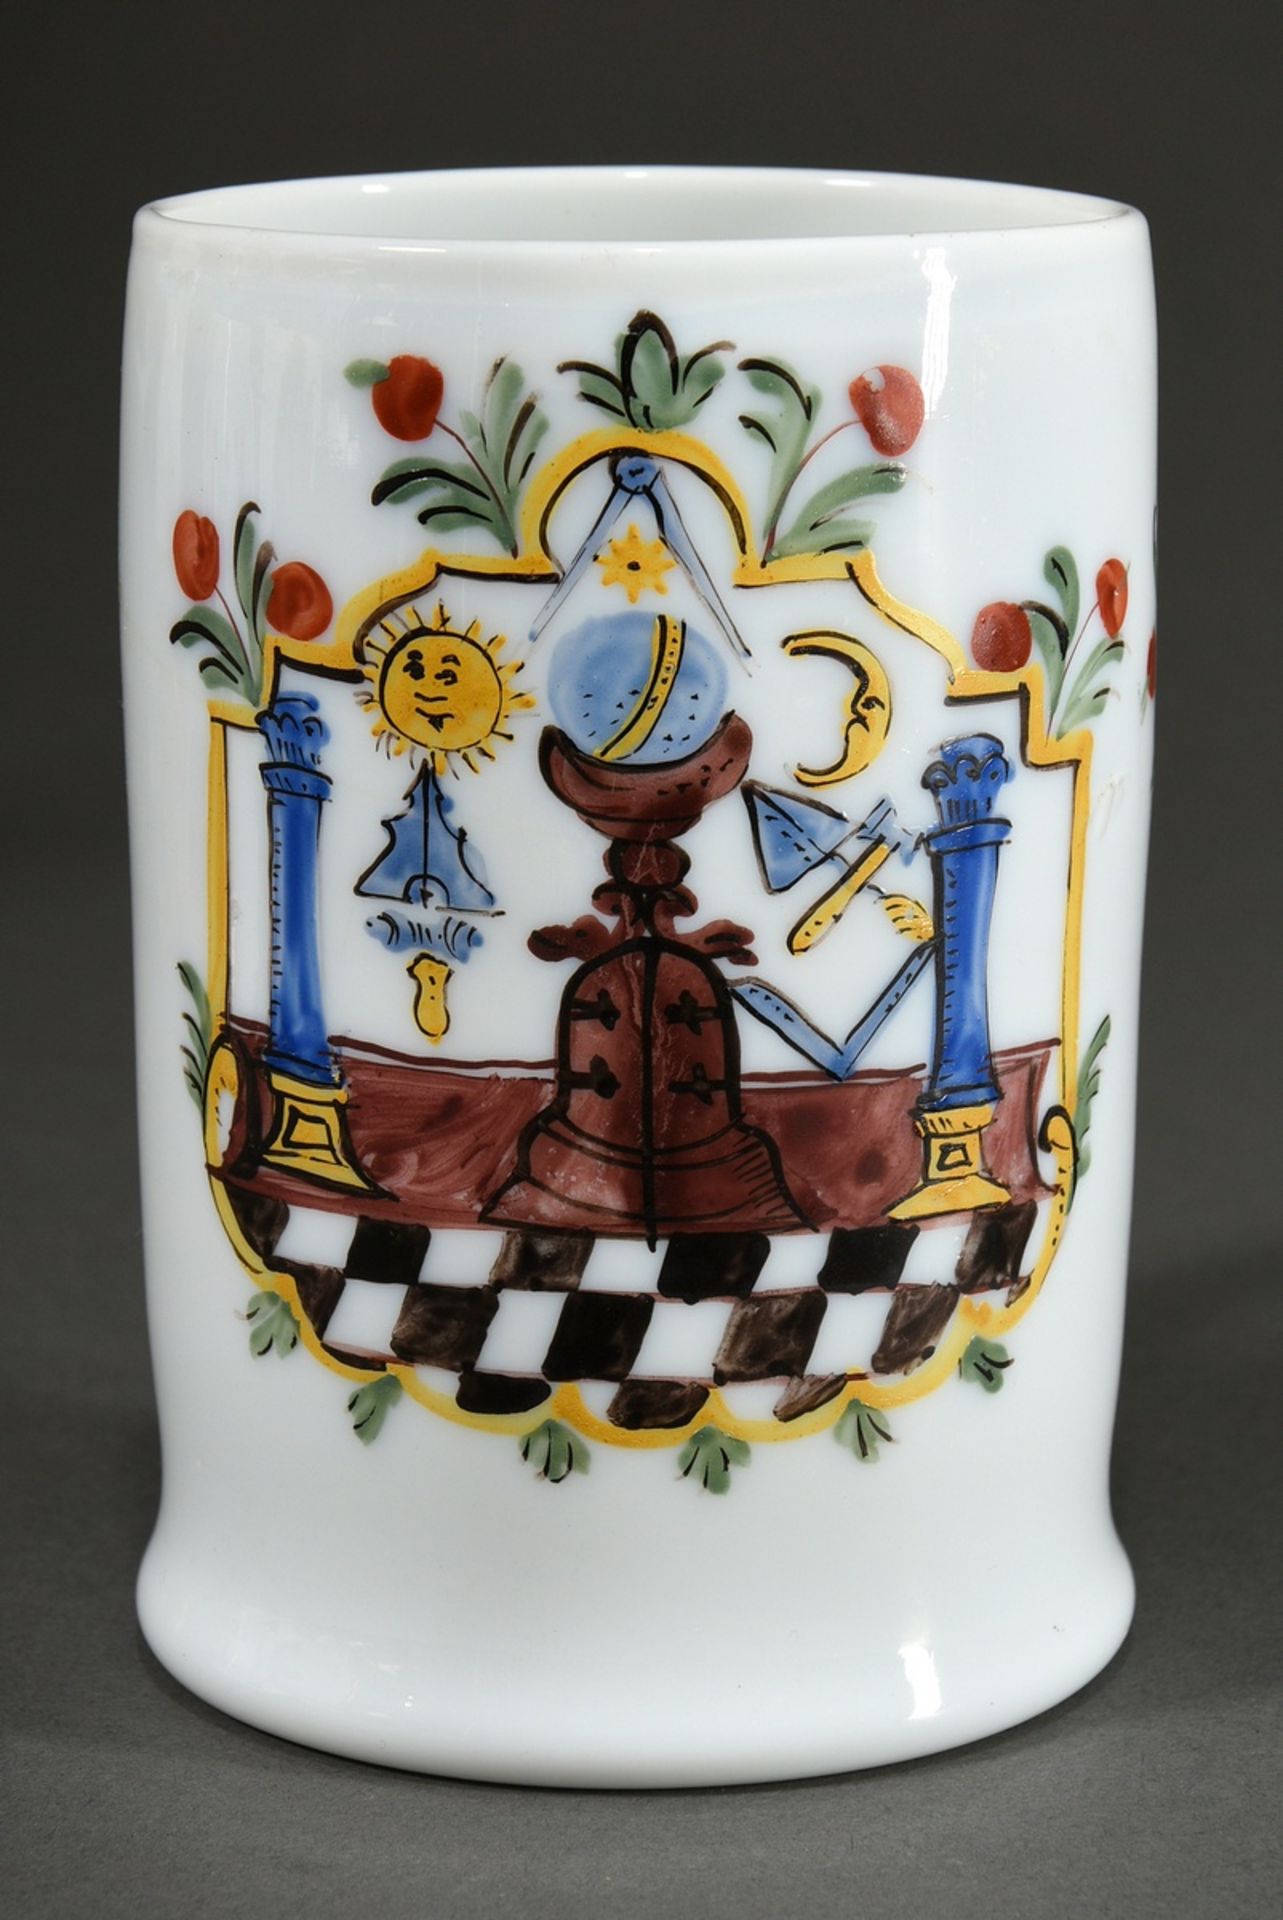 Freimaurer Milchglas Walzenkrug mit farbiger Emaille Malerei in floral verzierter Kartusche, Bandhe